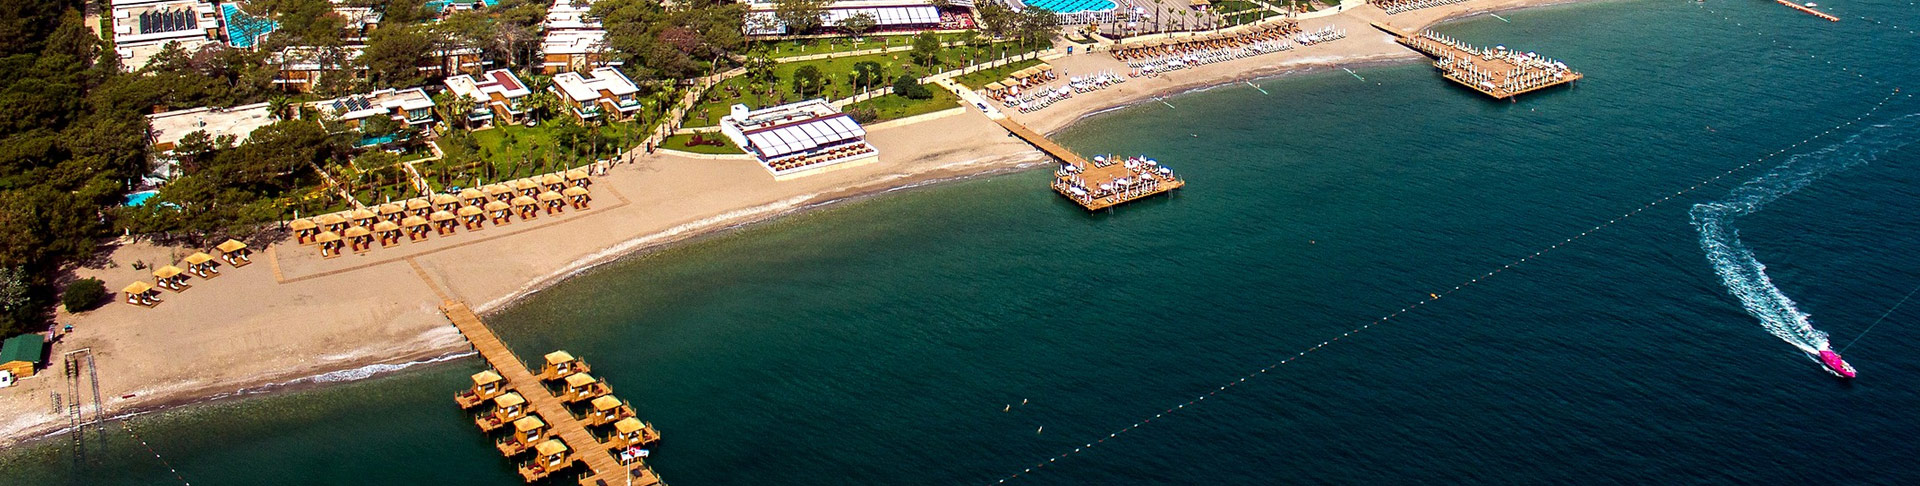 Beldibi transfert aéroport en taxi de / à l'hôtel de vacances transferts aéroport d'Antalya vacances voyage Turquie